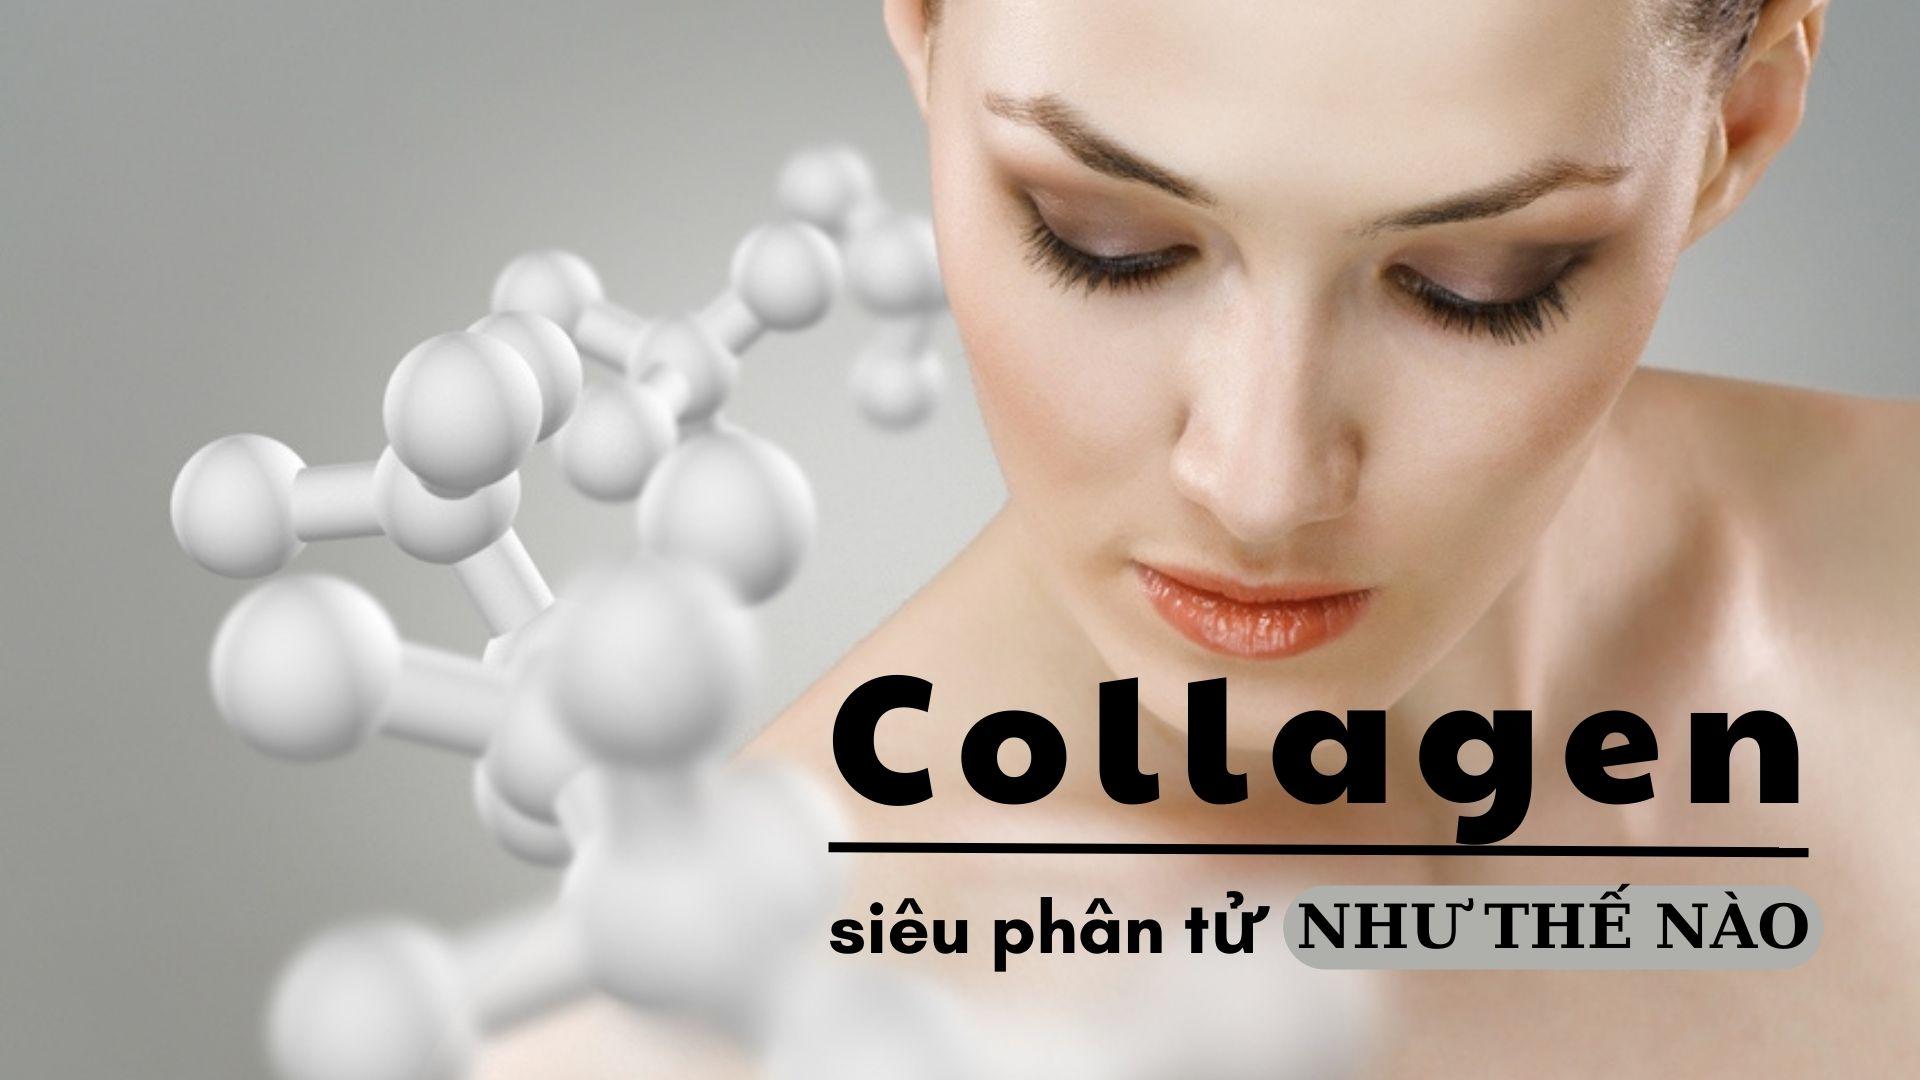 Hiệu quả nhanh chóng của collagen siêu phân tử trên da (Nguồn: Internet)